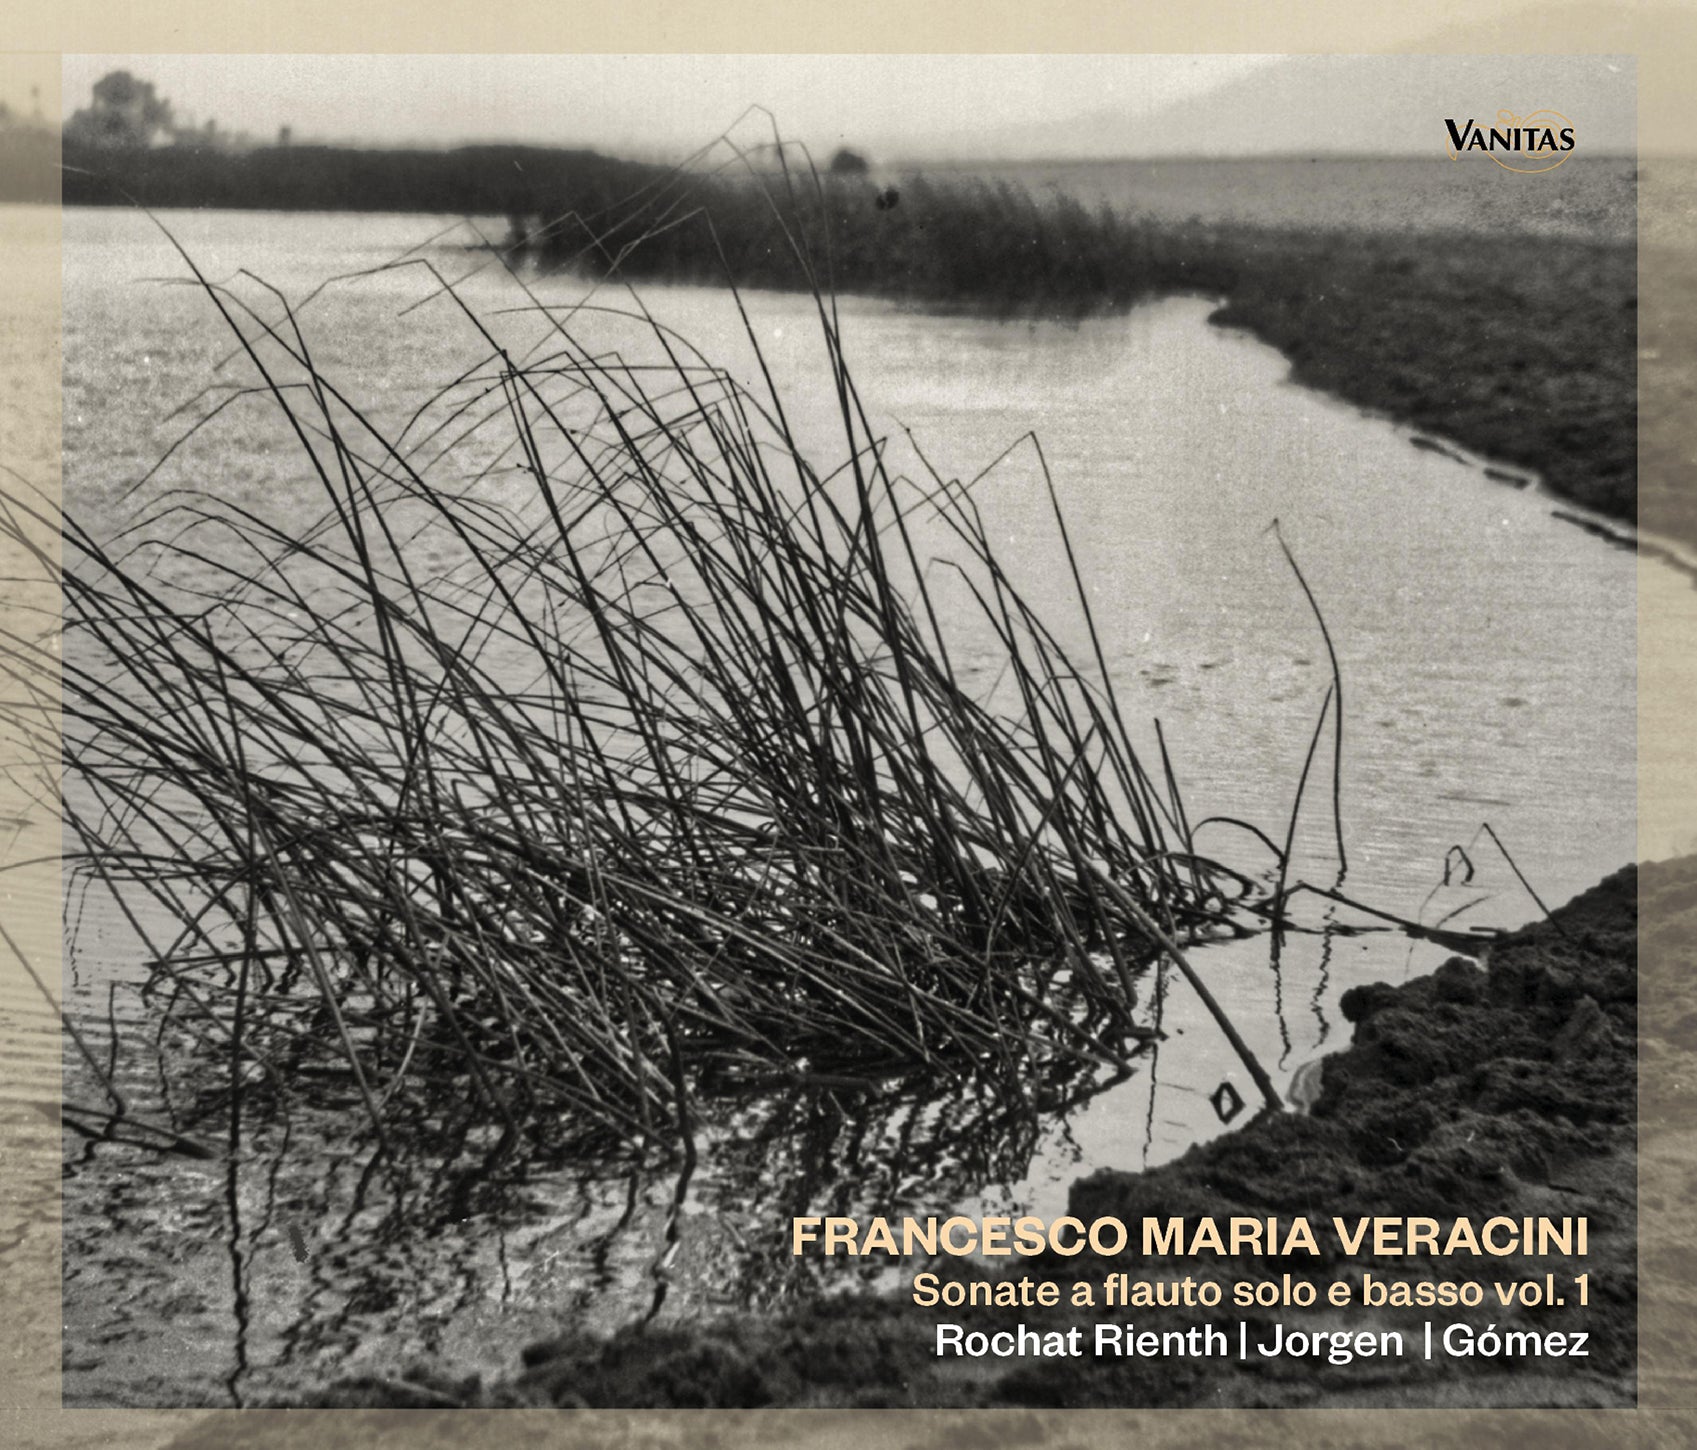 Veracini: Recorder Sonatas, Vol. 1 / Rochat Rienth, Jorgen, Gómez